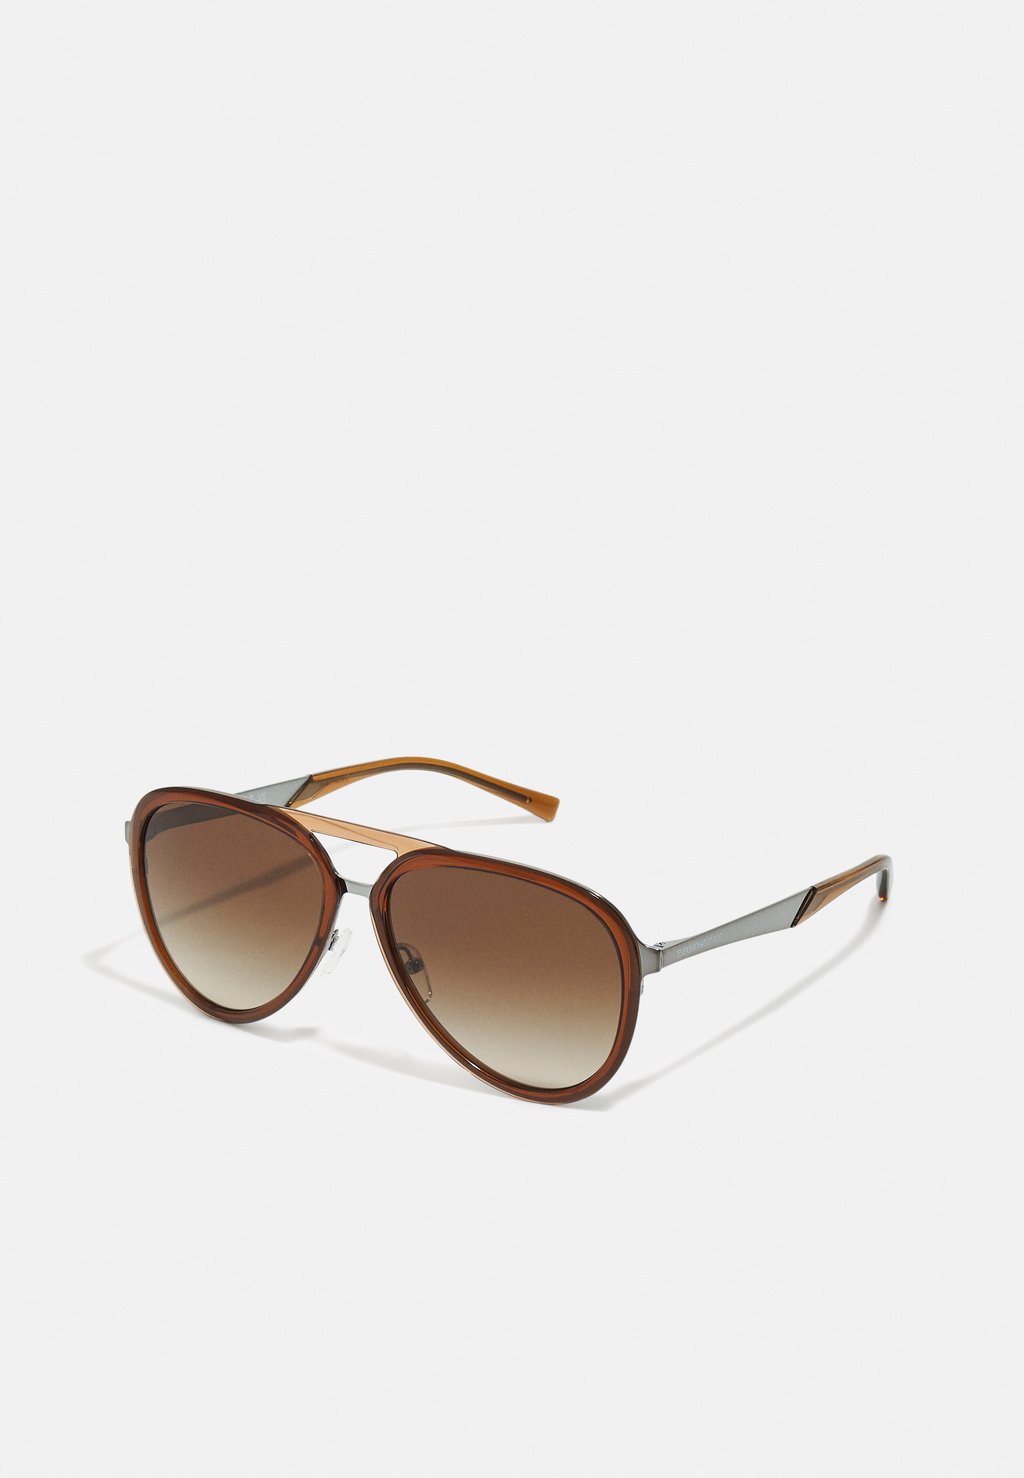 Солнцезащитные очки Emporio Armani, блестящие прозрачно-коричневые.